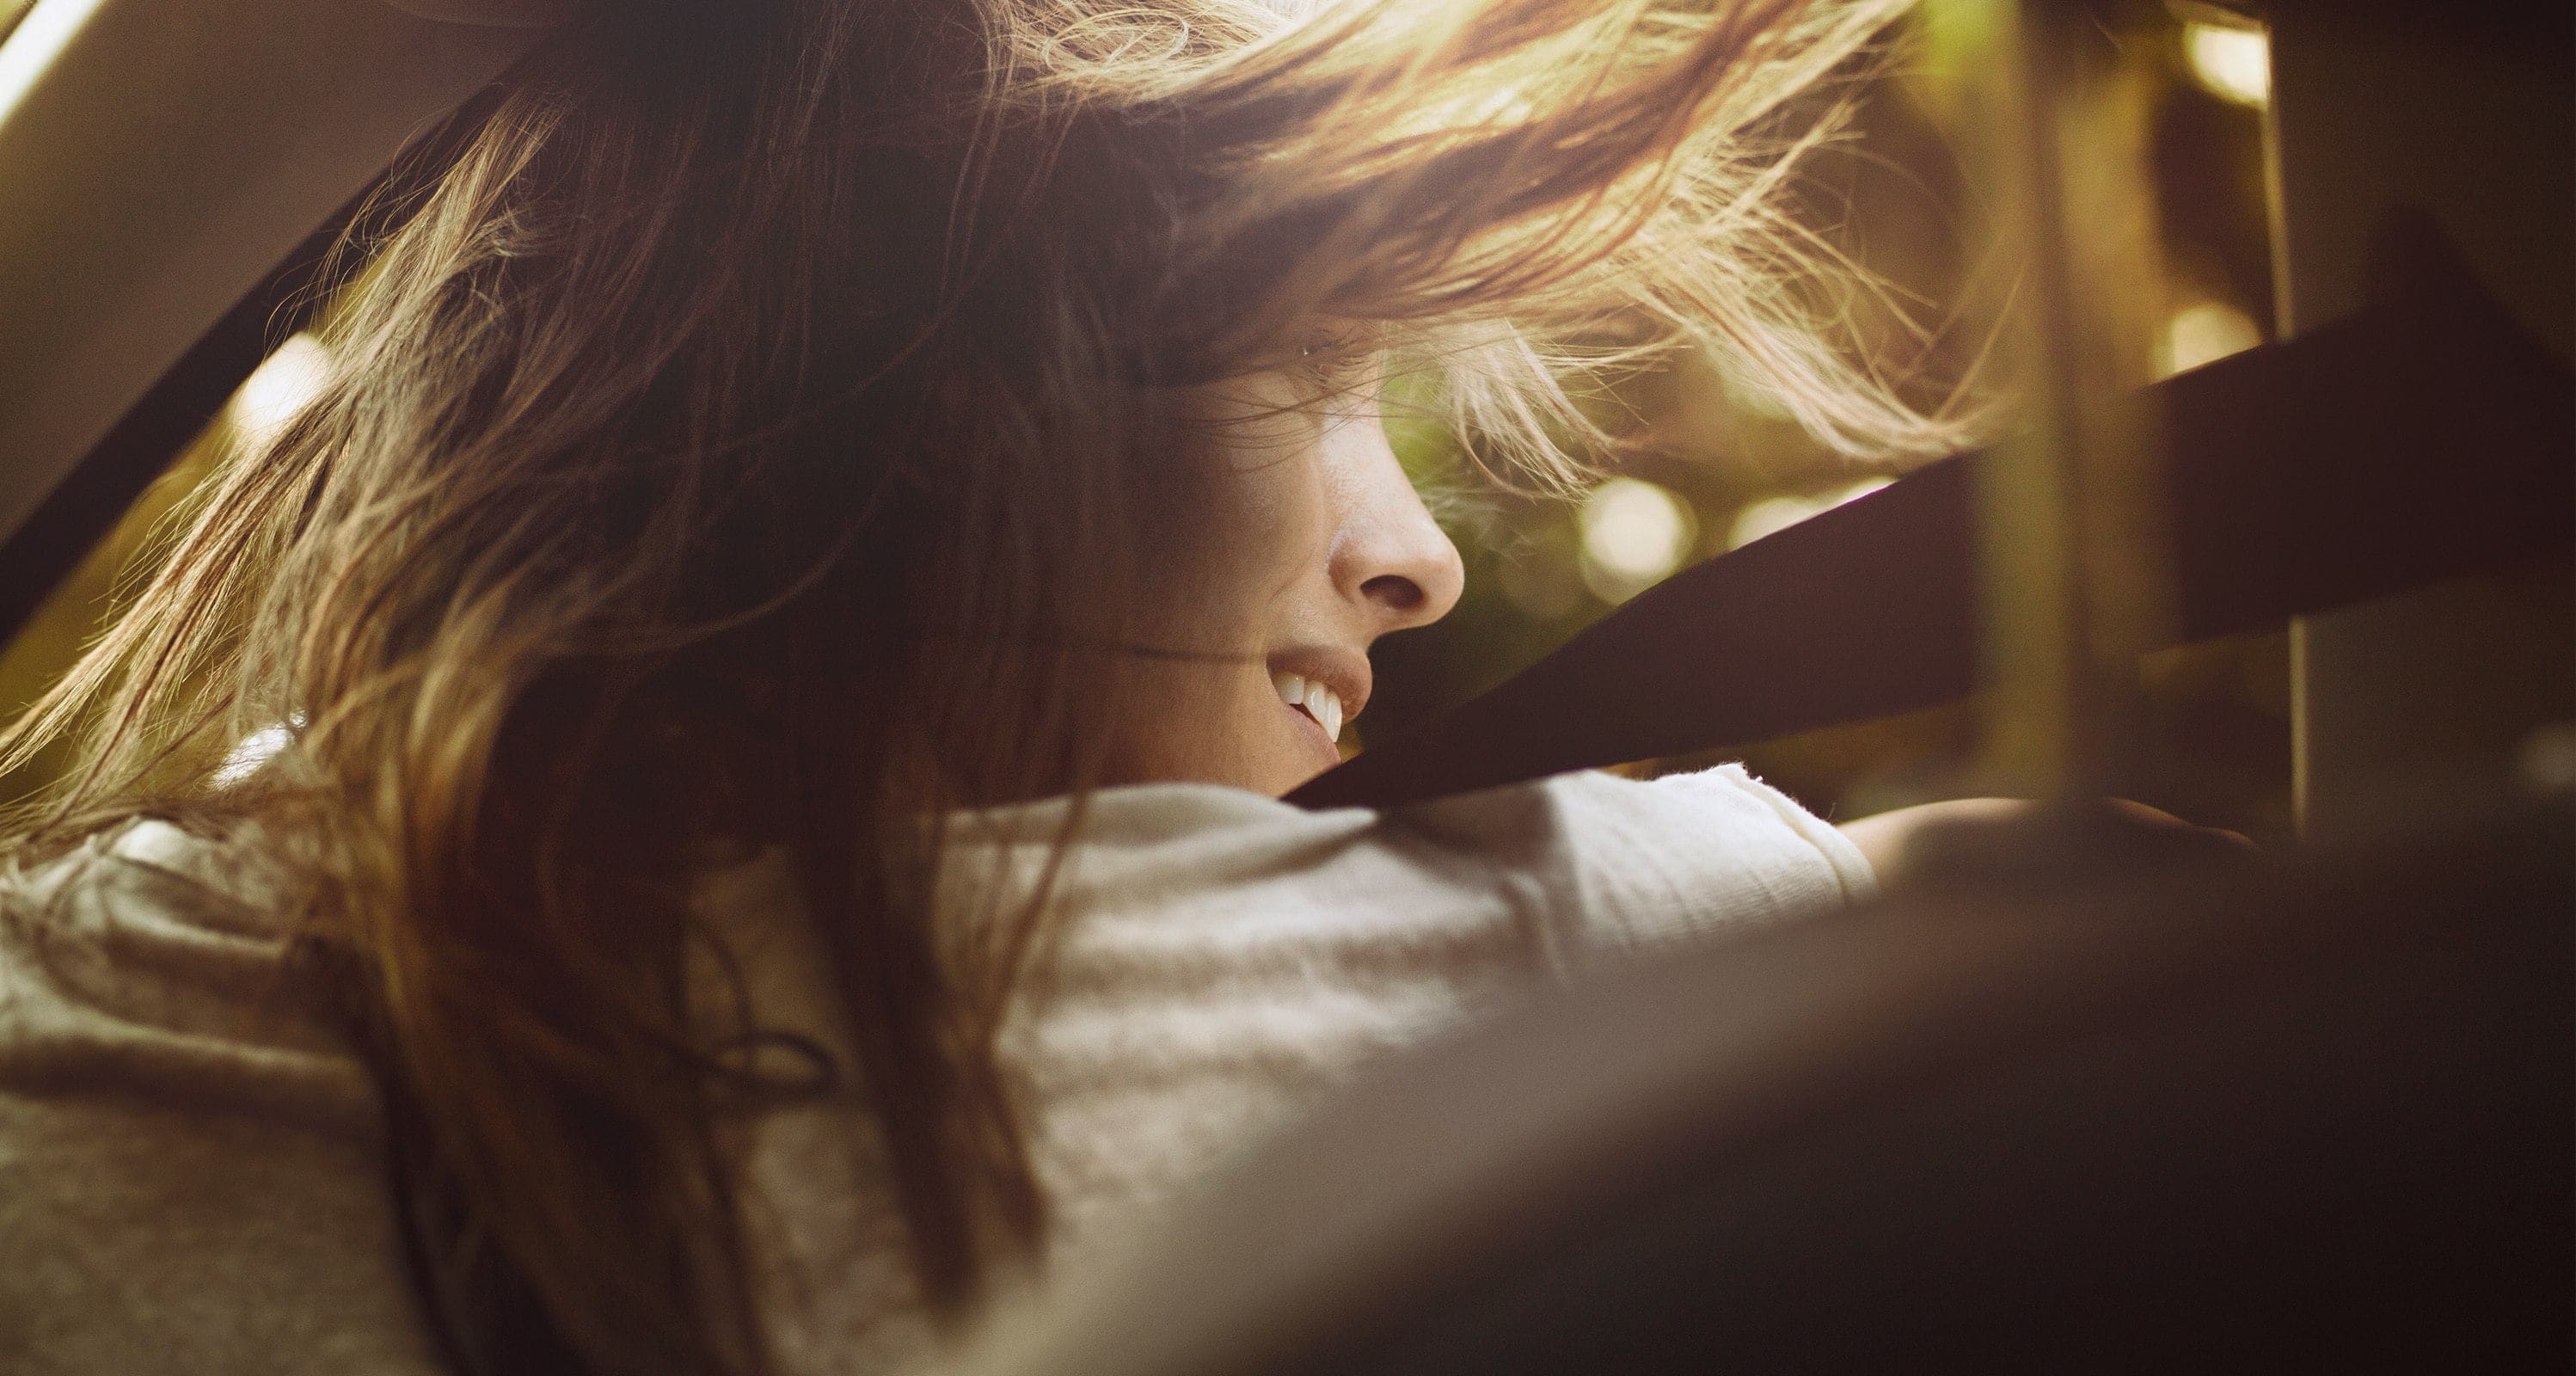 Servizi per vetture nuove SEAT – Immagine a distanza di una donna che esce da una vettura con i capelli al vento